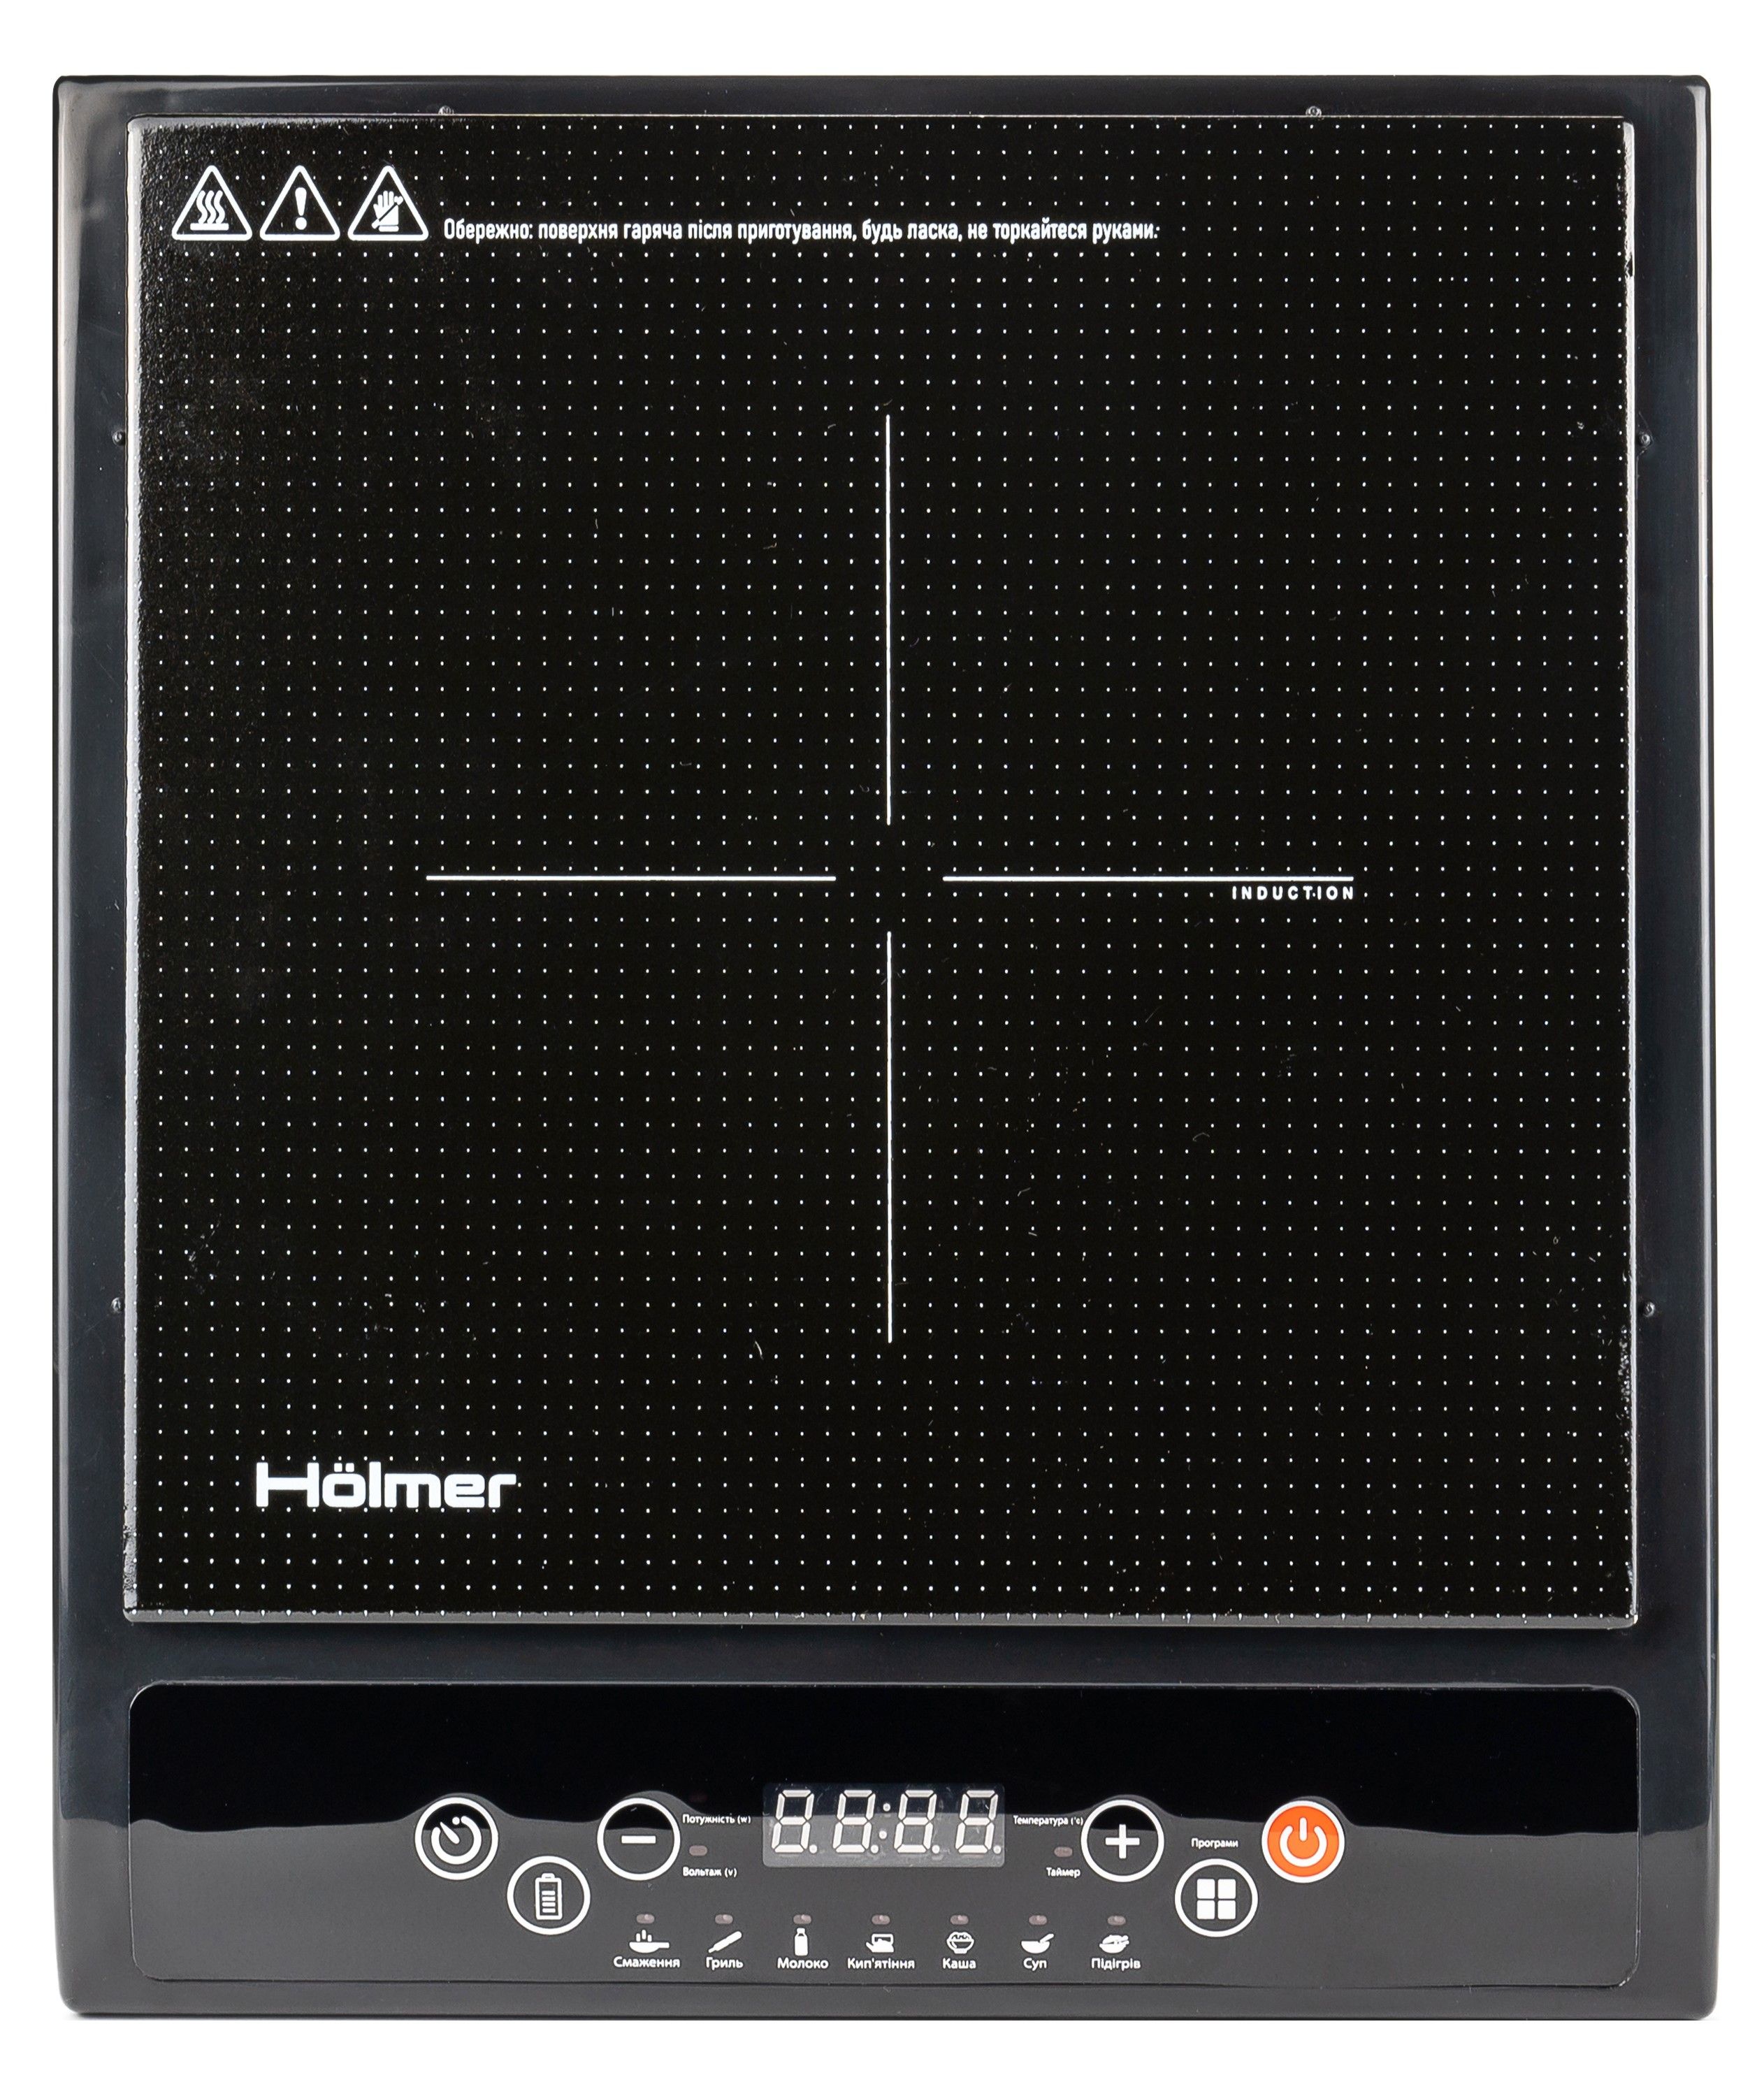 Отзывы индукционная настольная плита Holmer HIP-252C в Украине